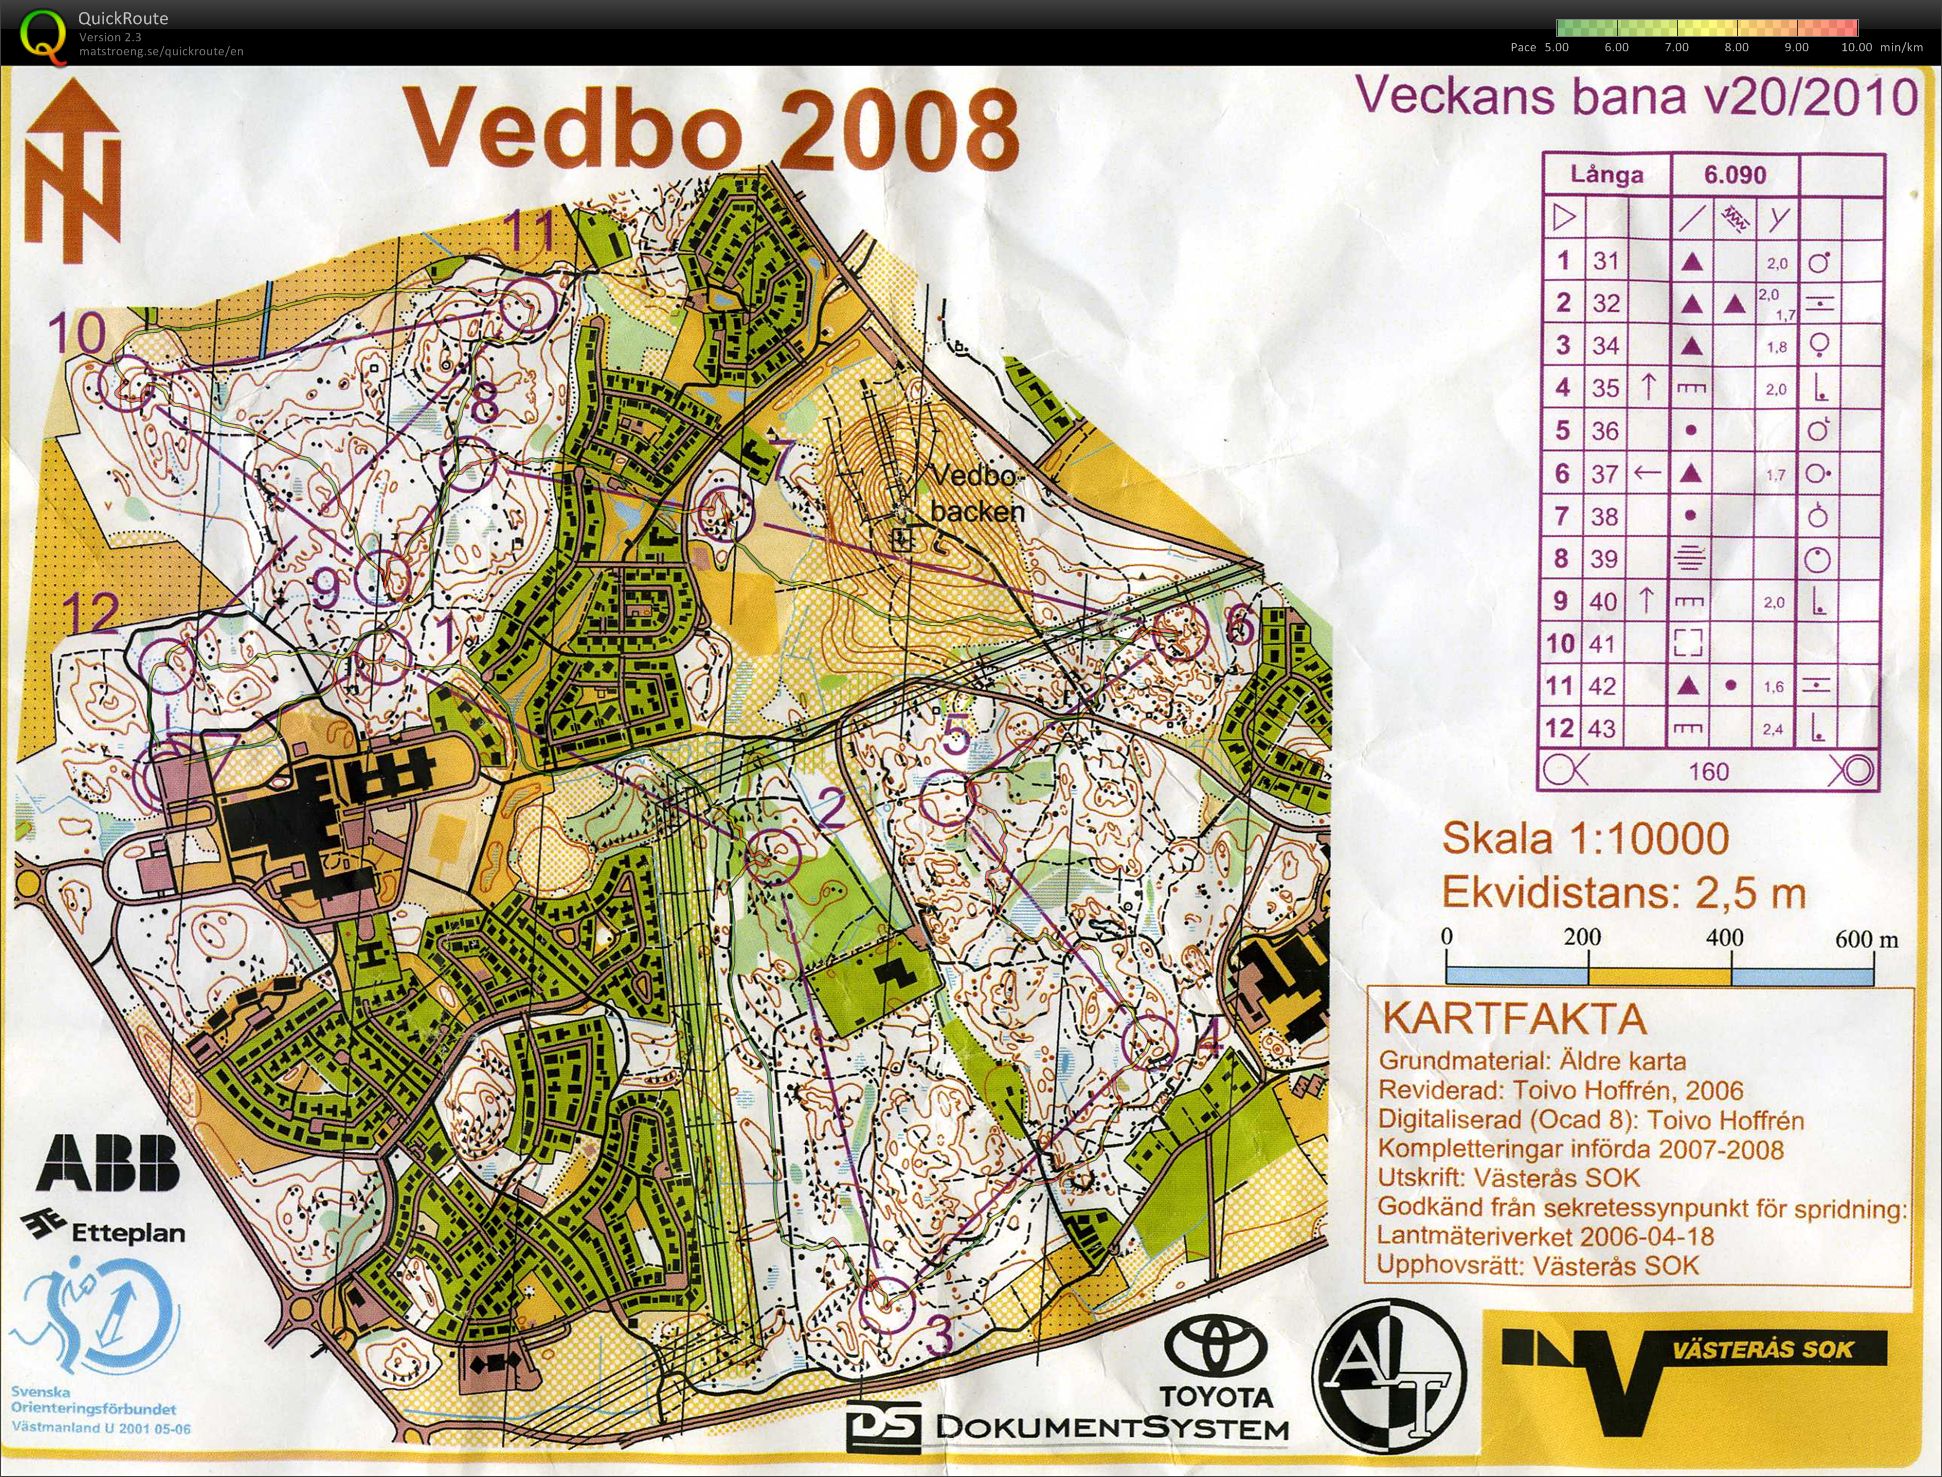 Veckans bana v1020 Vedbo (2010-05-20)